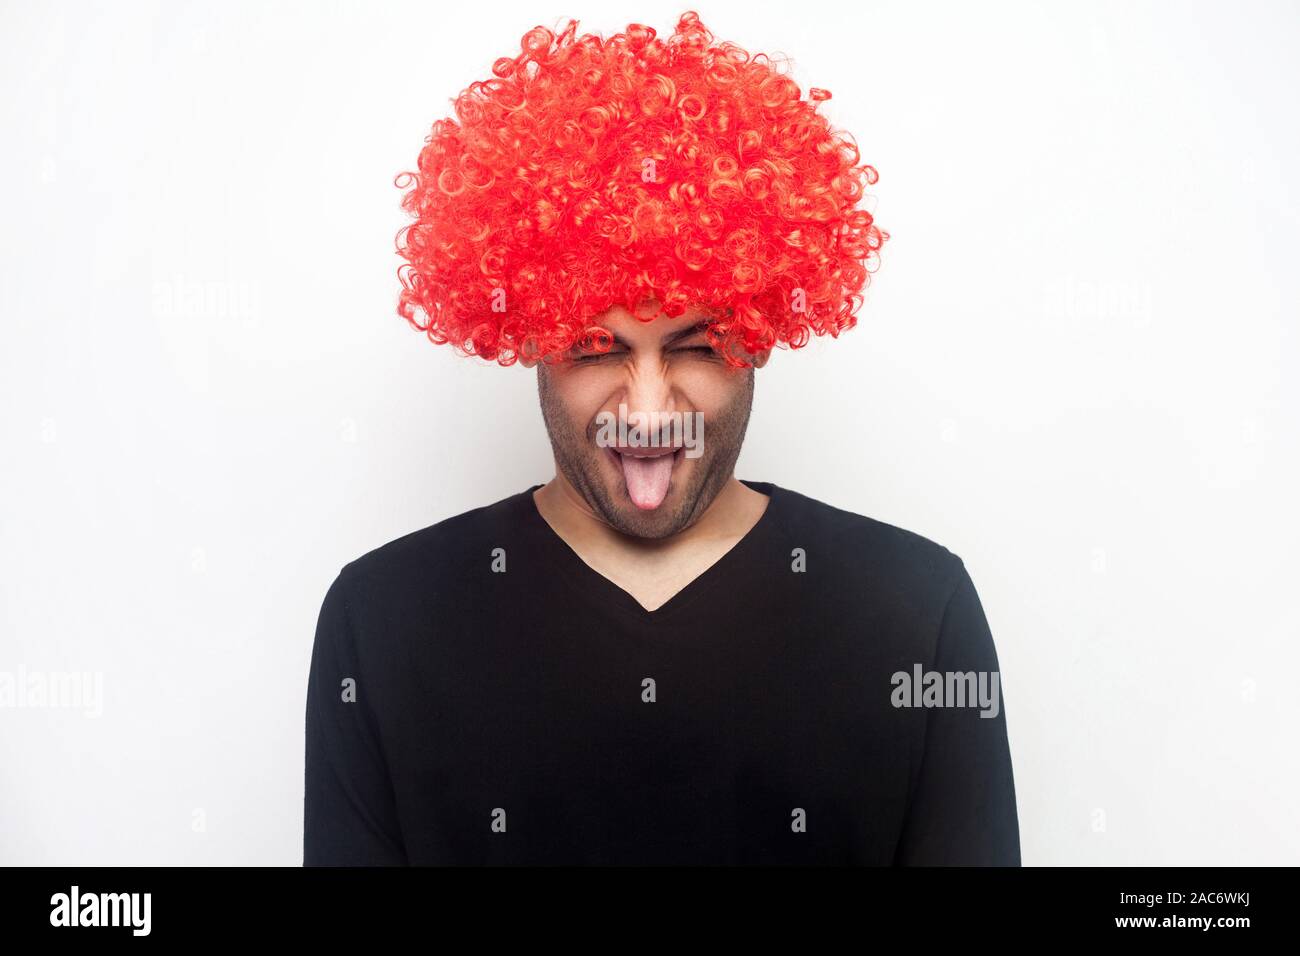 Ritratto di funny crazy strano uomo con setole e ricci parrucca rosso spuntavano lingua, rendendo infantile grimace disobbedienti, eccitante e ingannare aroun Foto Stock